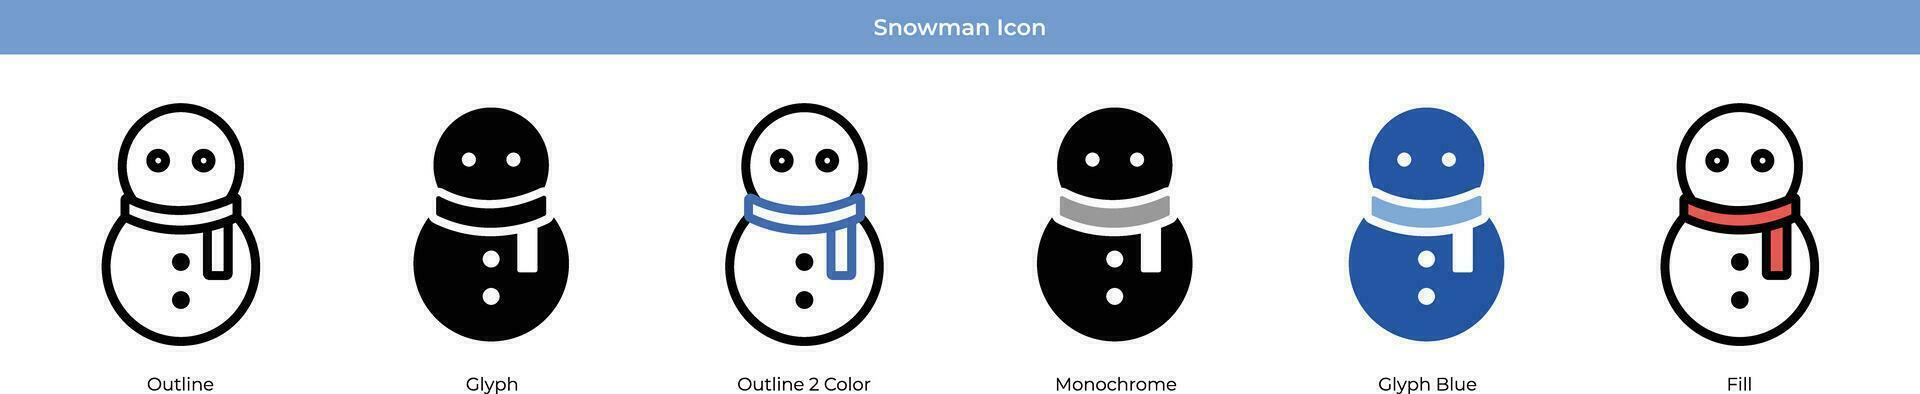 conjunto de iconos de muñeco de nieve vector